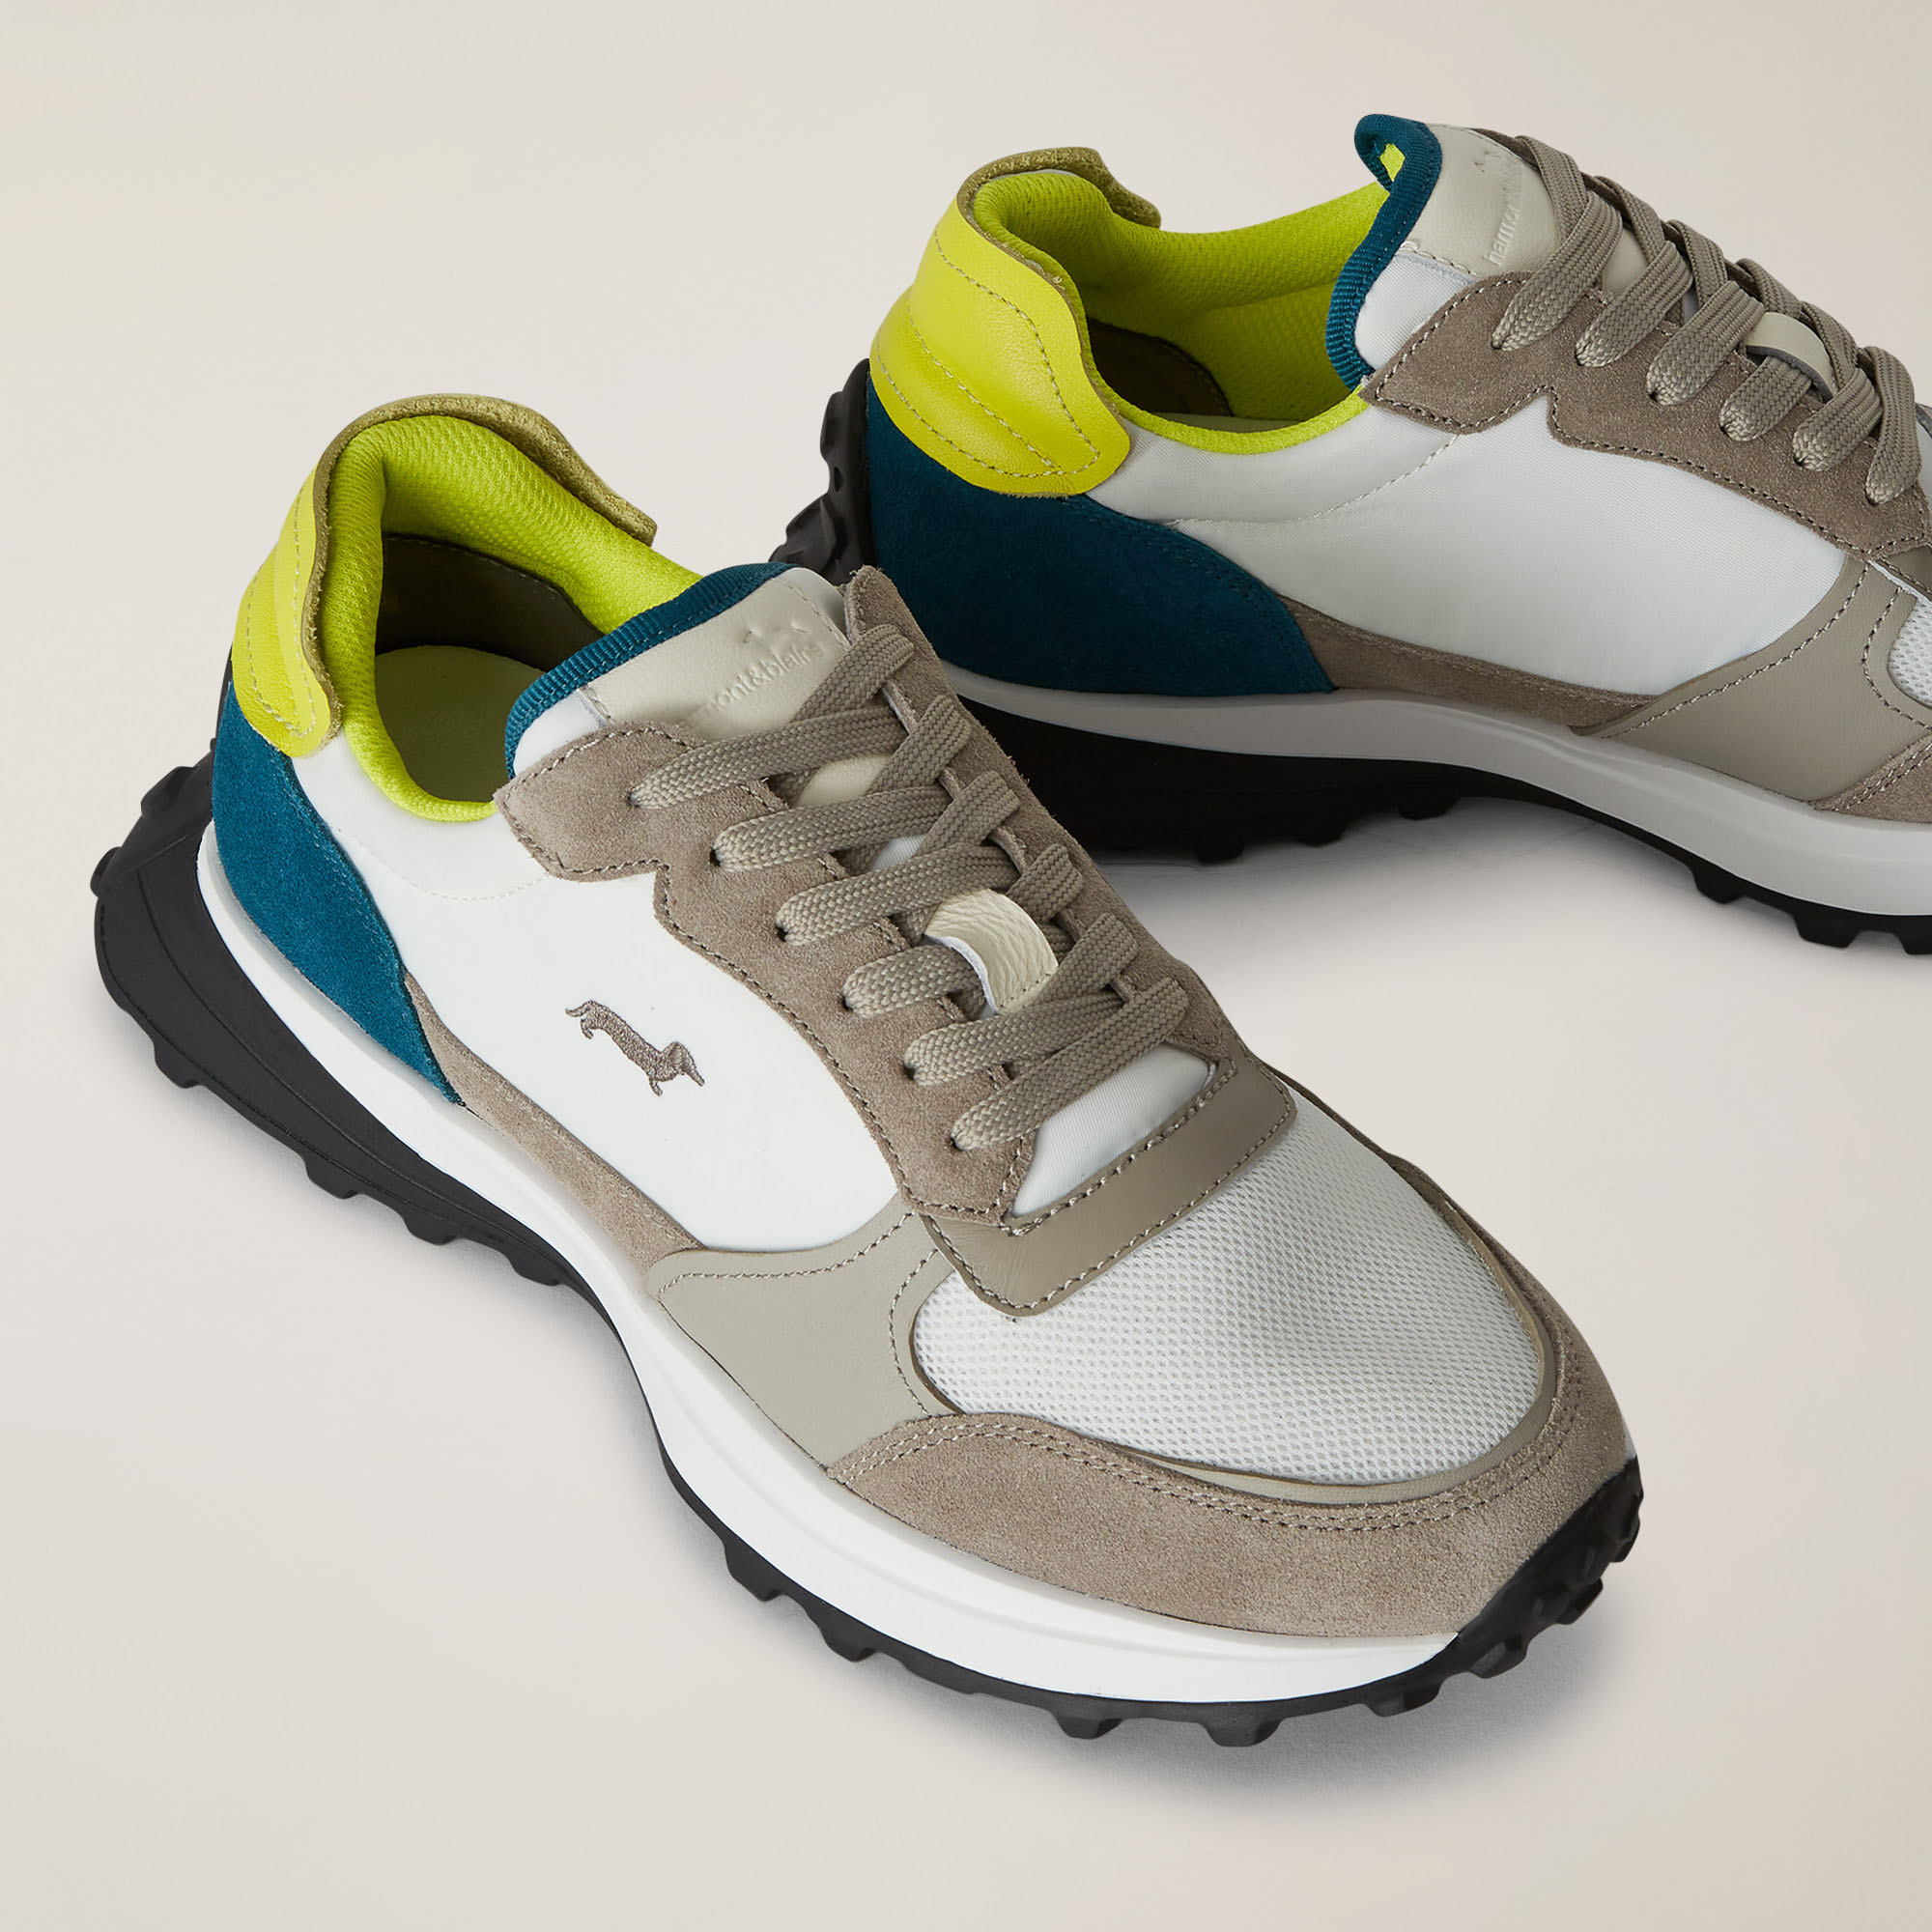 Mixed-Material Ultra Lightweight Running Sneakers, Cobalt blue, large